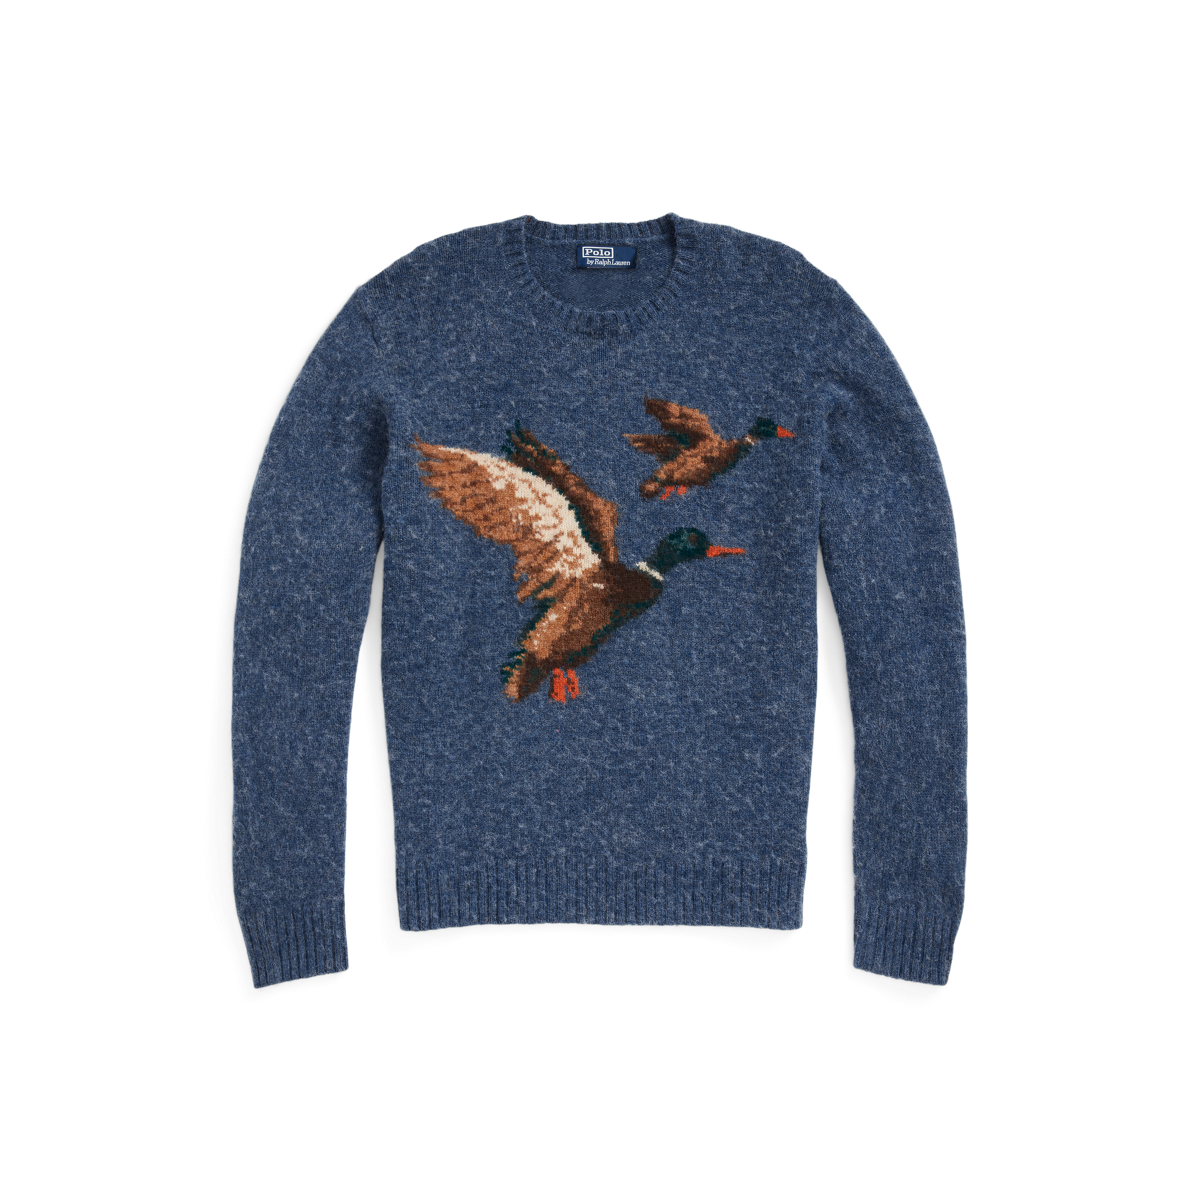 Aprender acerca 92+ imagen polo ralph lauren duck sweater